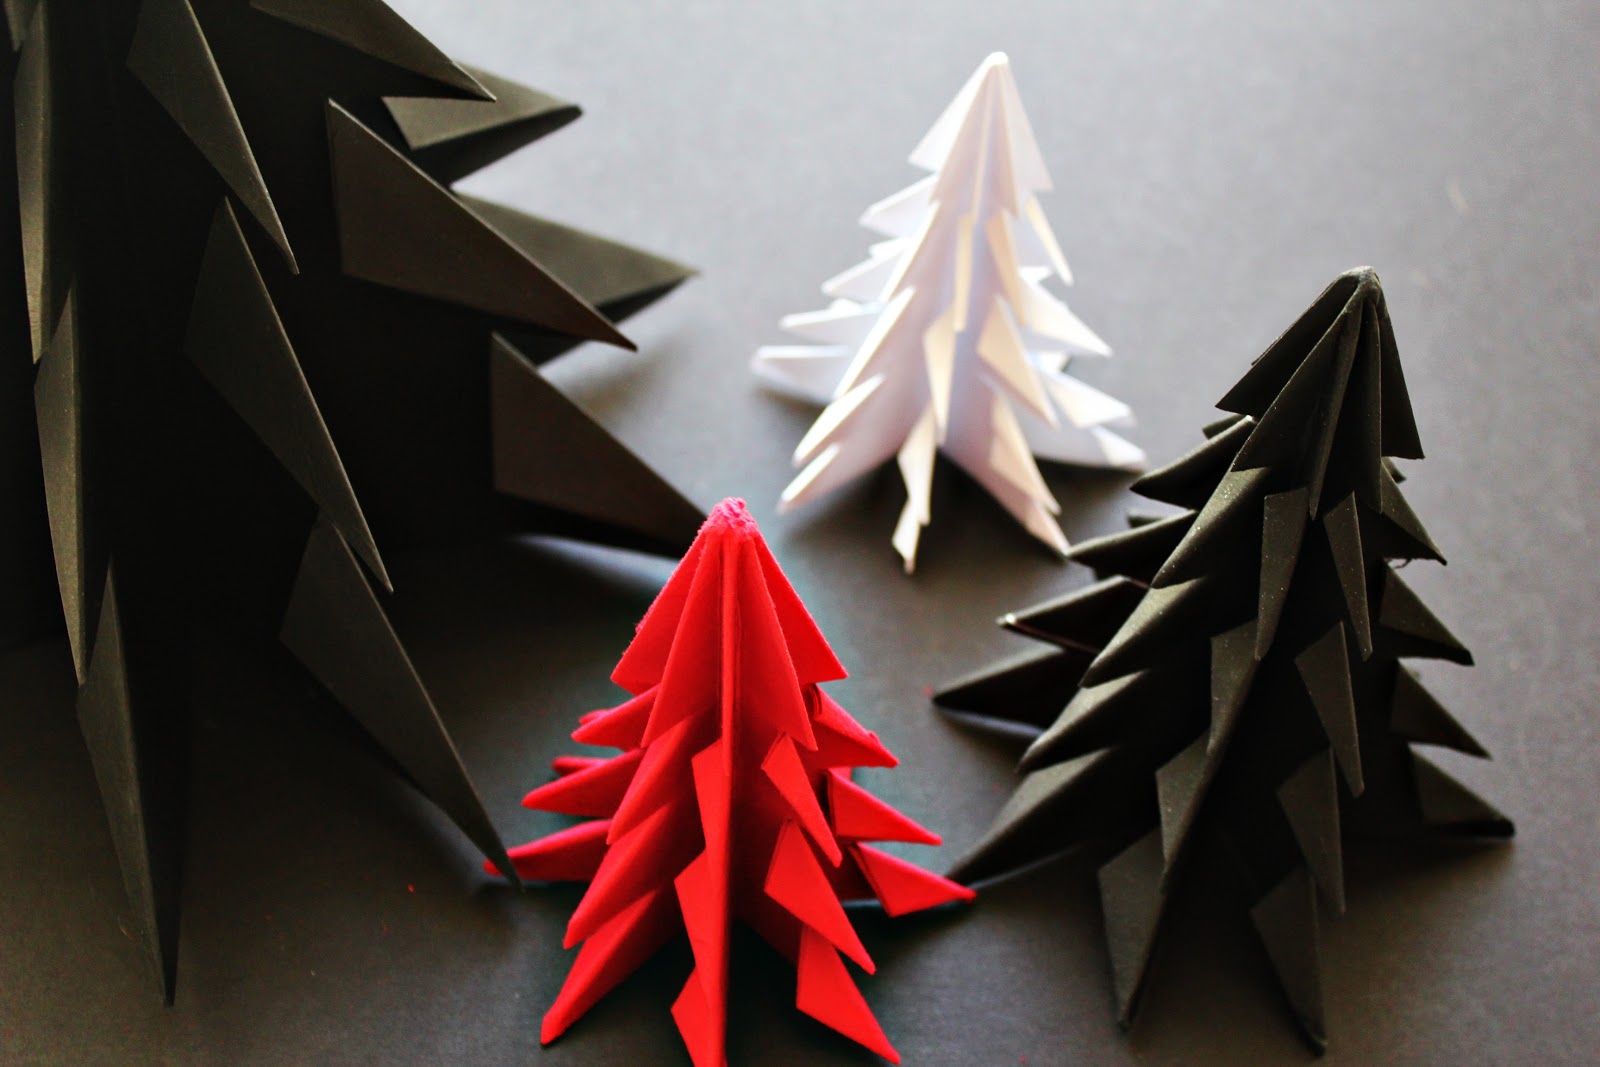 Елочки в технике оригами могут быть самыми разнообразными